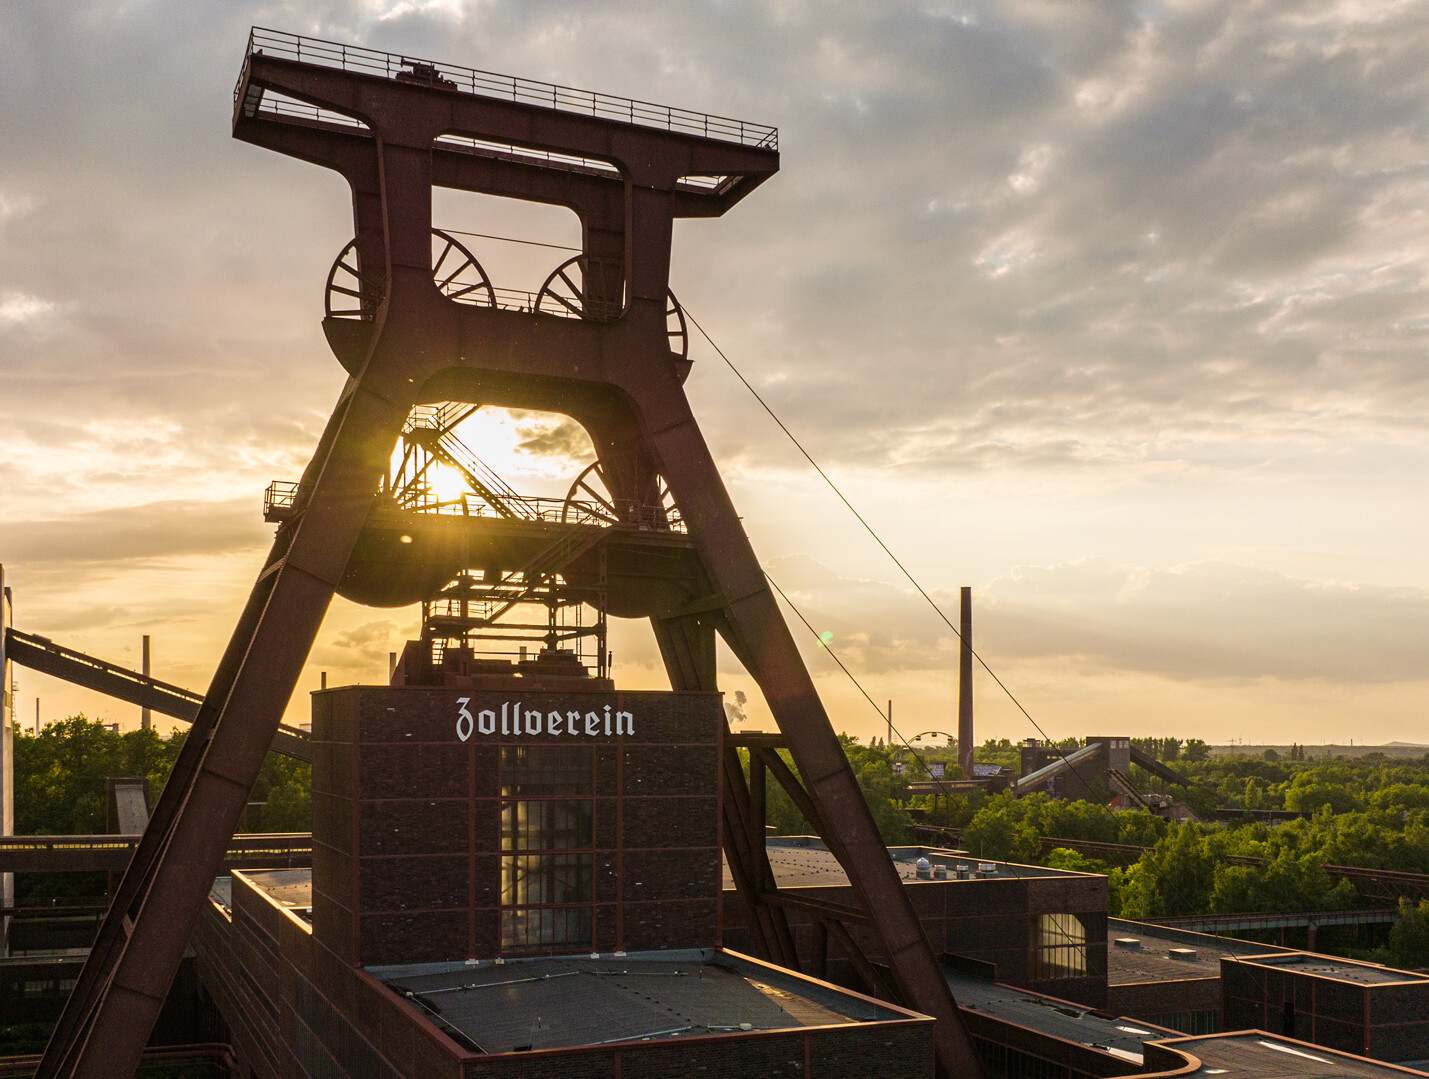 Der markante Doppelbock-Turm von Zeche Zollverein in Essen vor Sonnenuntergang. © Tourismus NRW e.V.